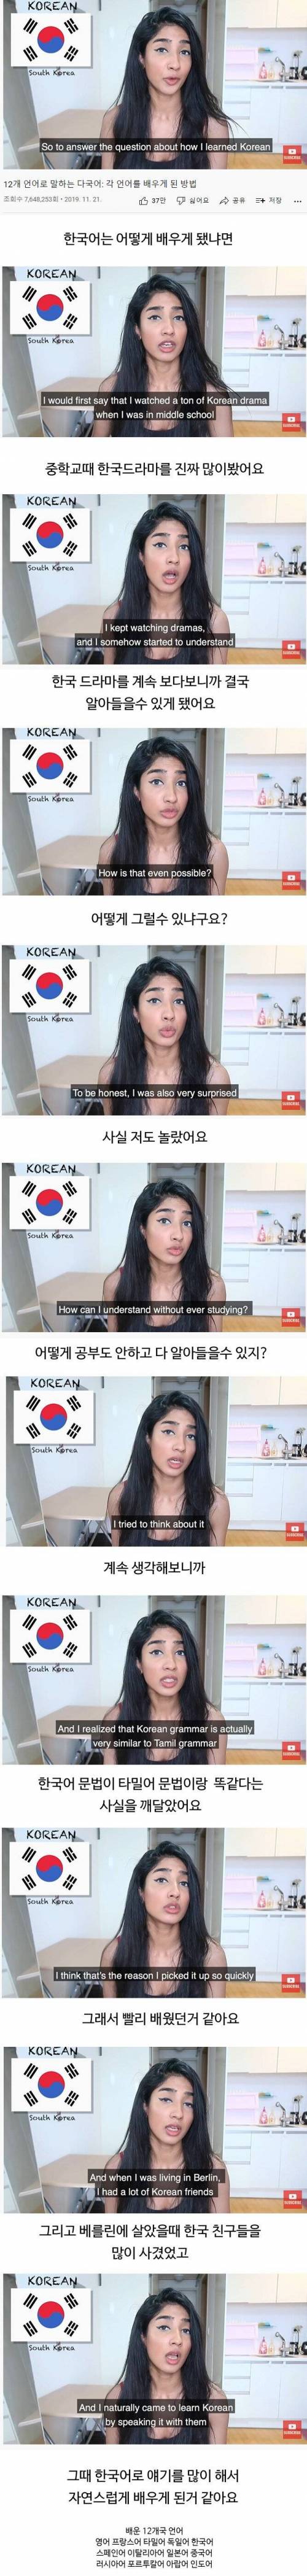 8 인도 여성이 말하는 한국어 쉽게 배운 이유 그냥 님이 개쩌는것 같은데요.jpg